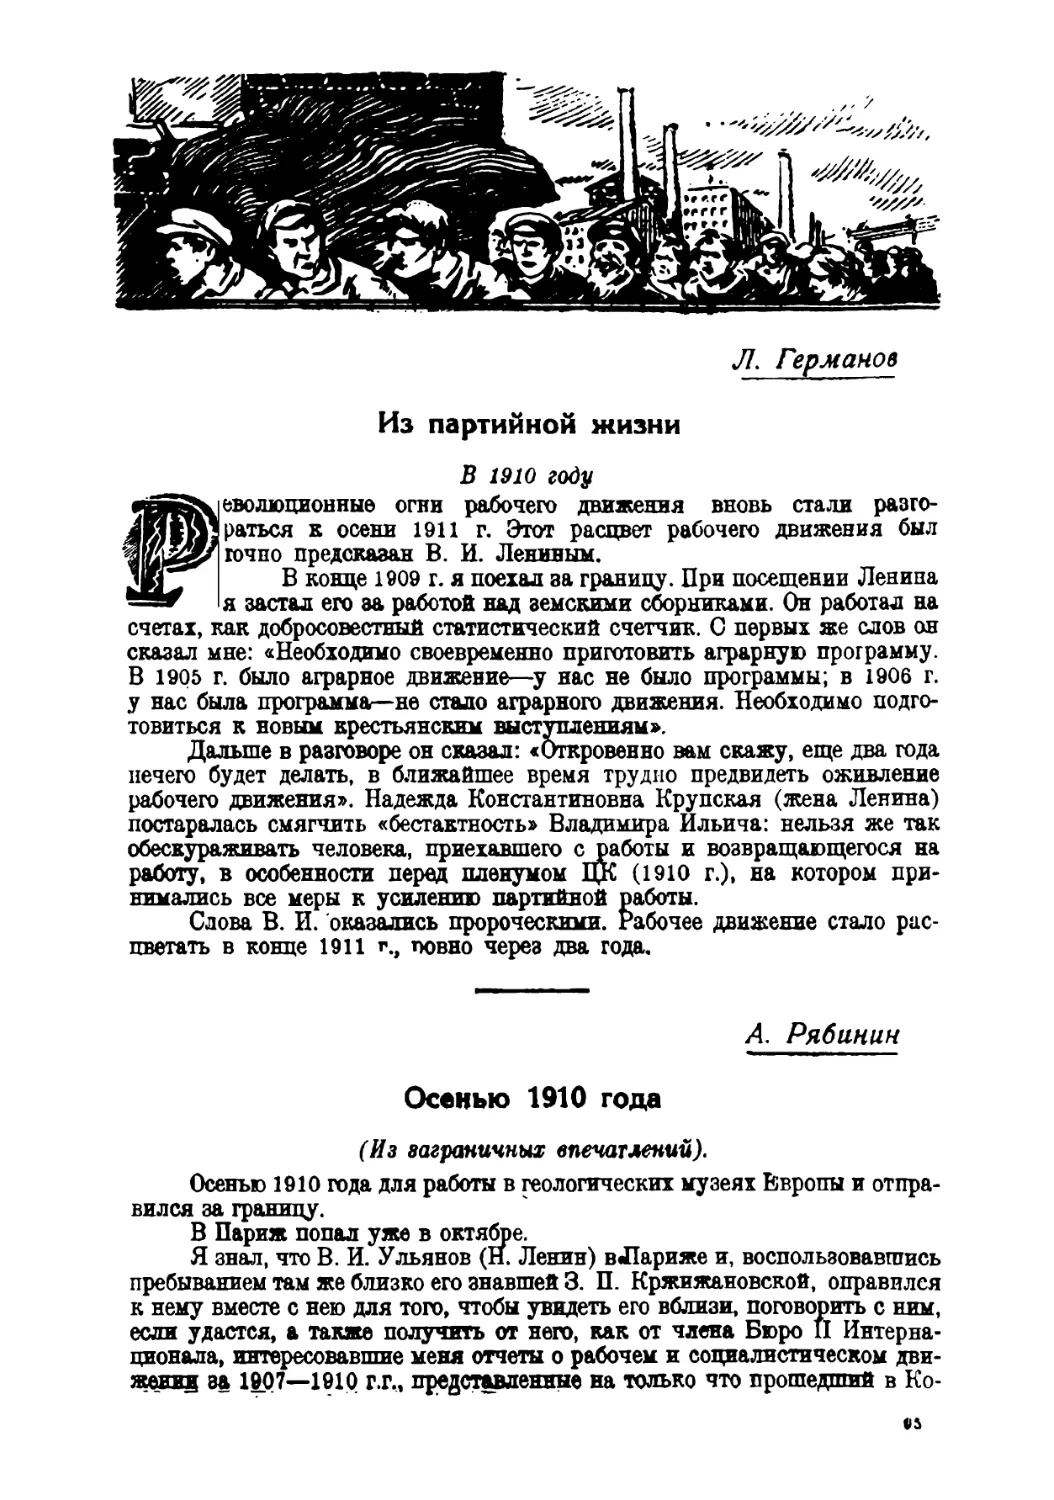 Осенью 1910 года — А. Рябинин